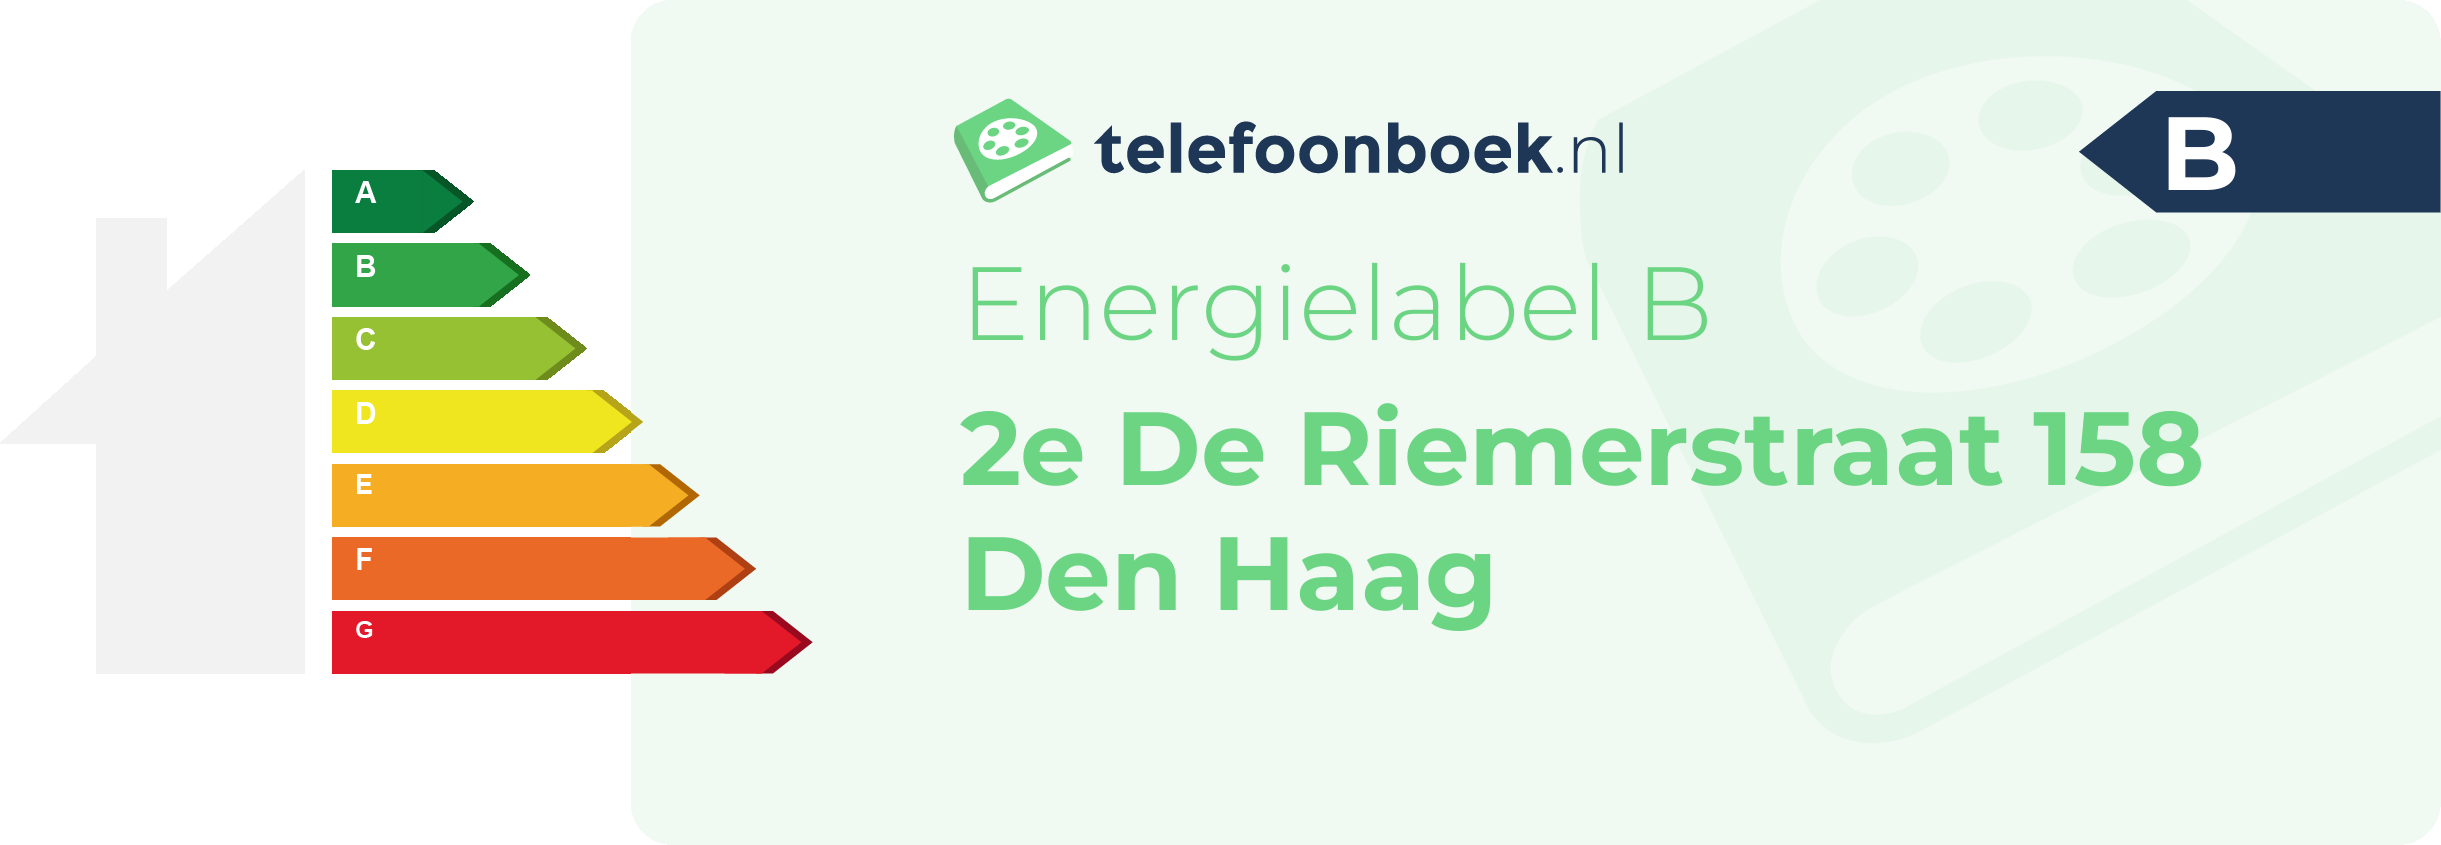 Energielabel 2e De Riemerstraat 158 Den Haag